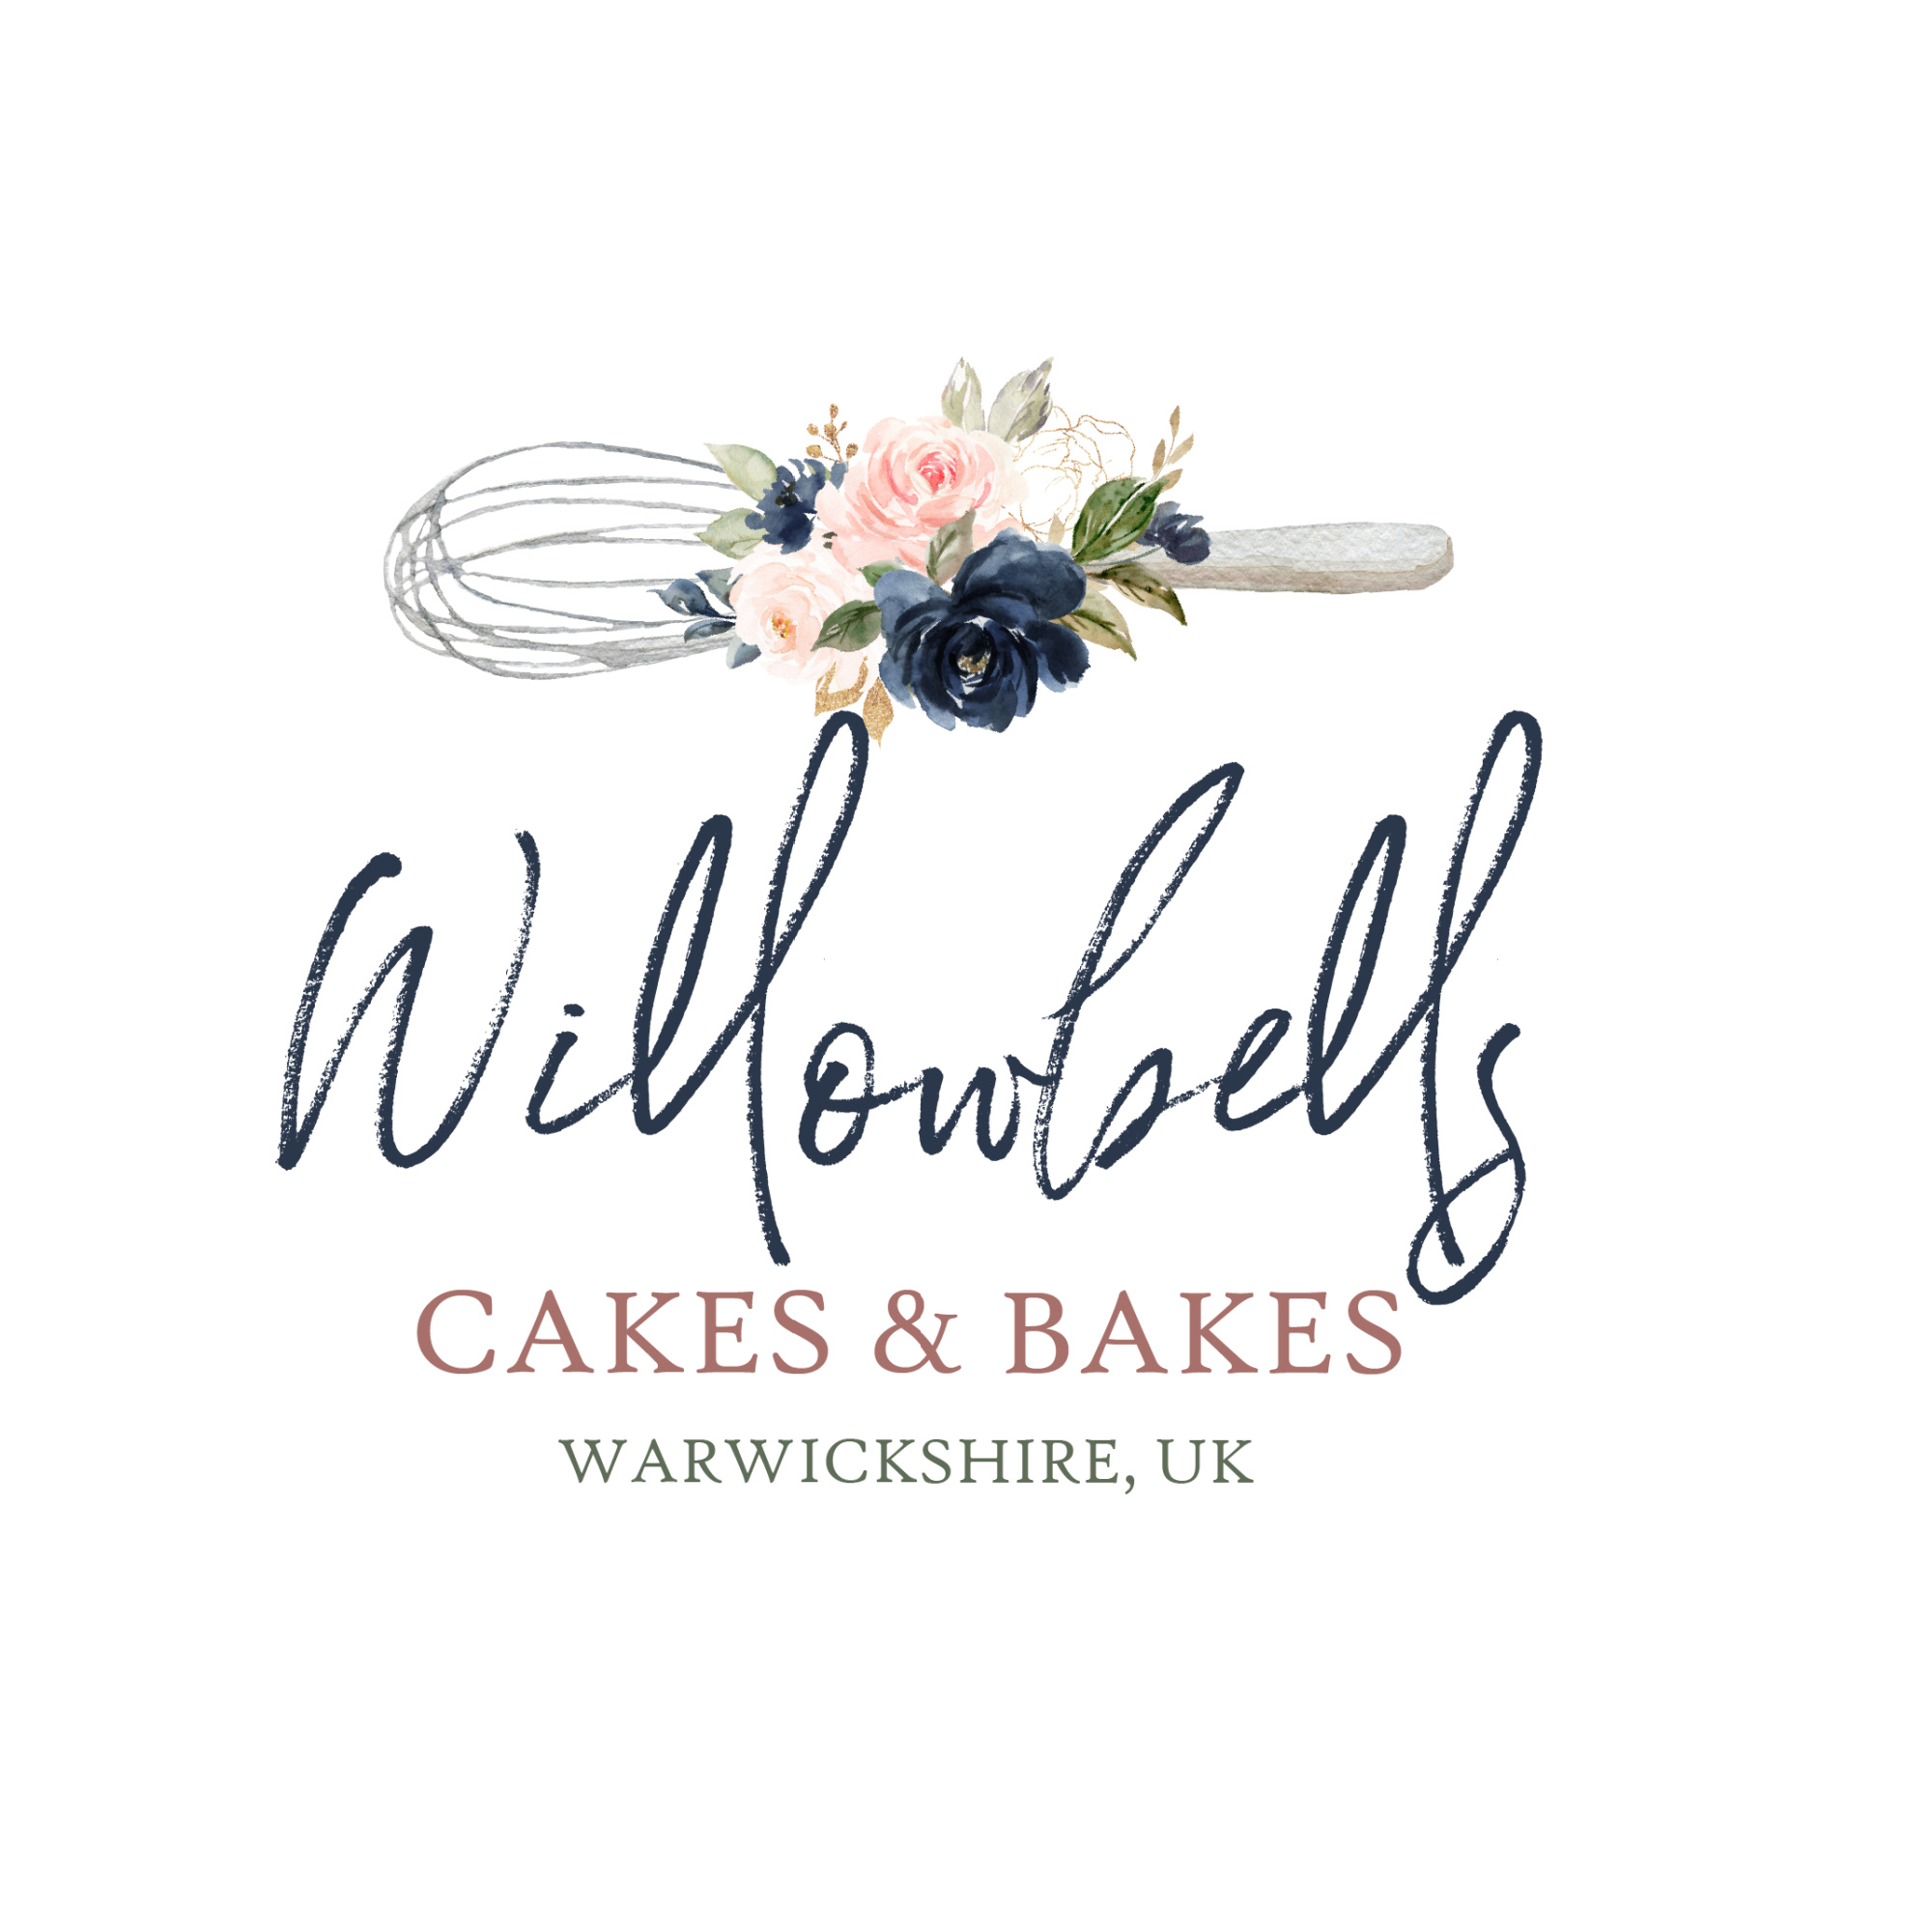 Willowbells Bakes's logo